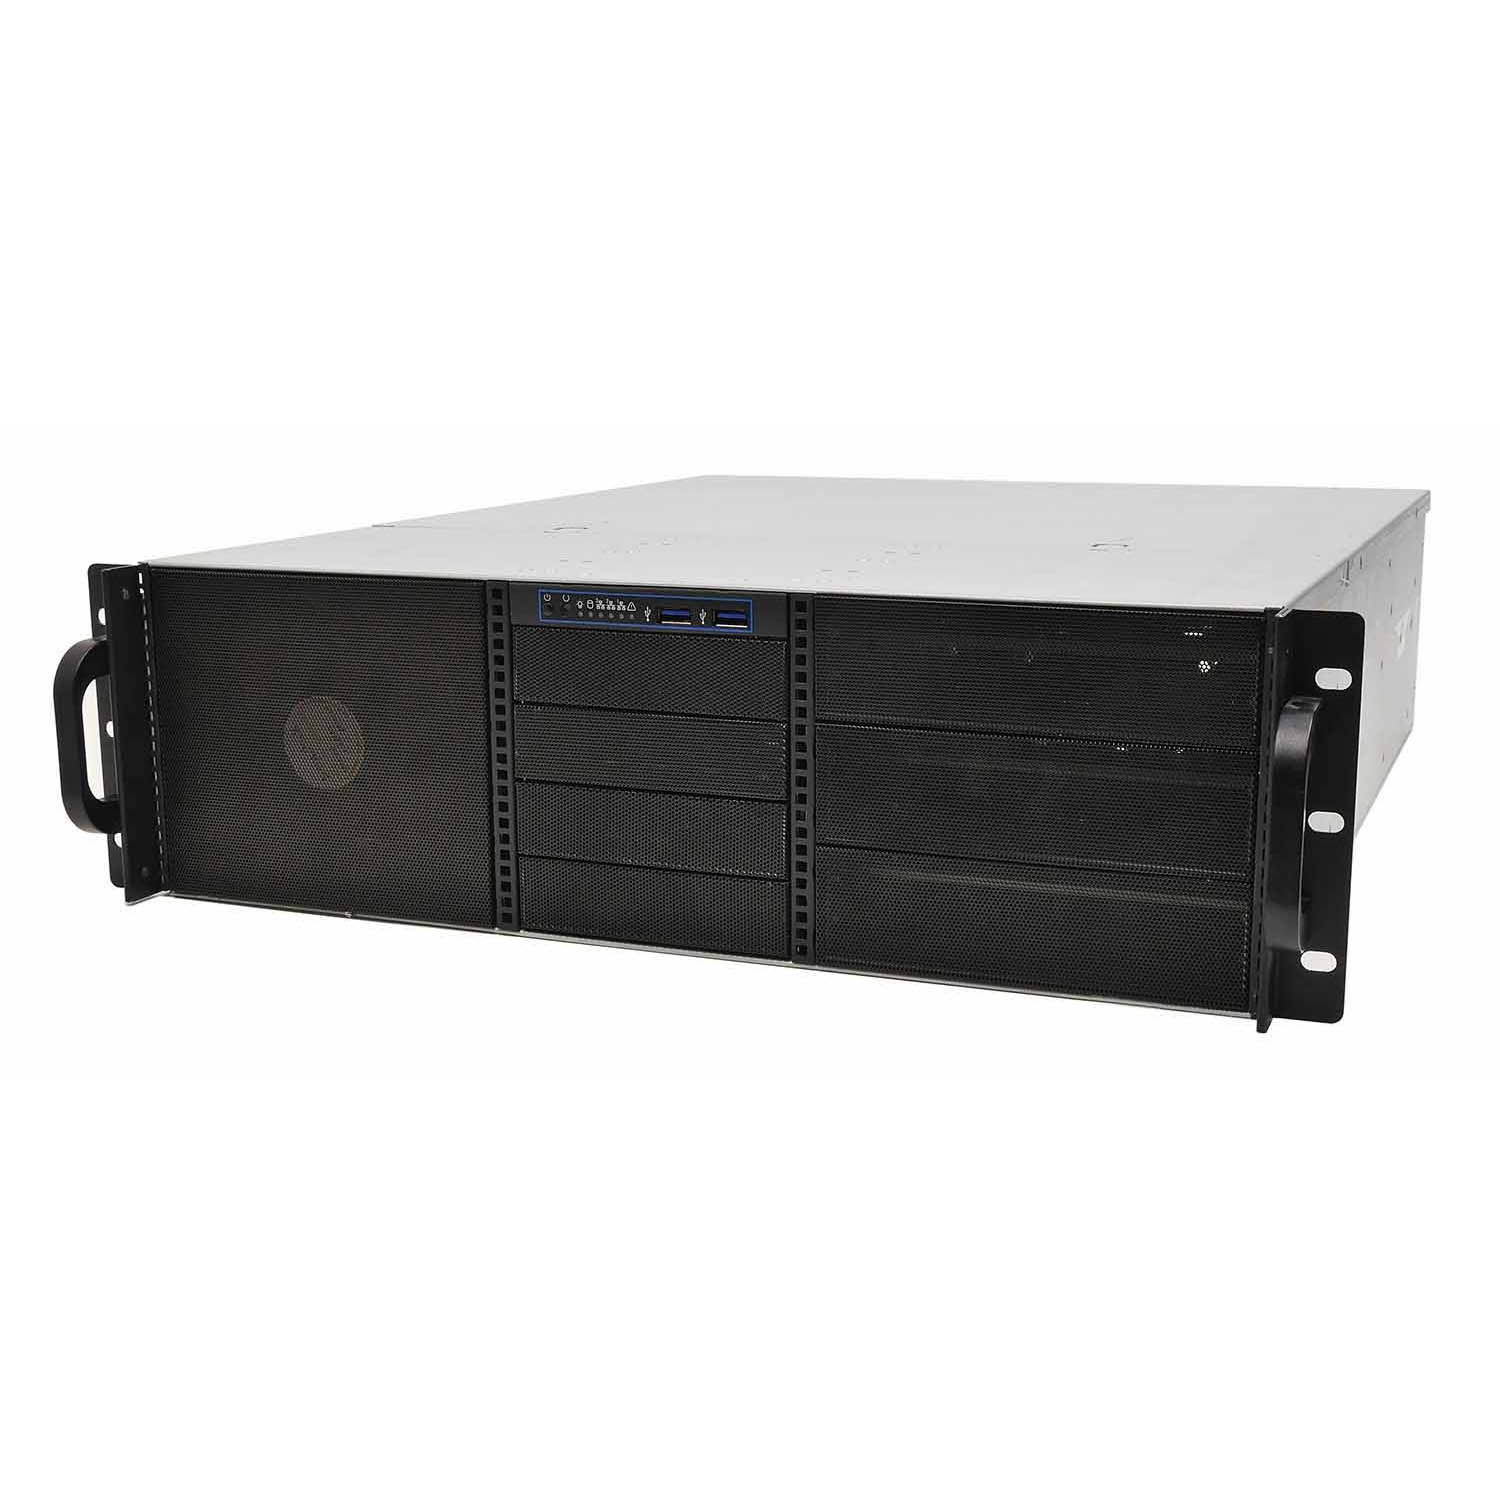 Серверный корпус 3U NR-N3514 (EATX 12x13, 6x5.25ext (10x3.5int), 4x3.5ext, 550мм)черный,NegoRack